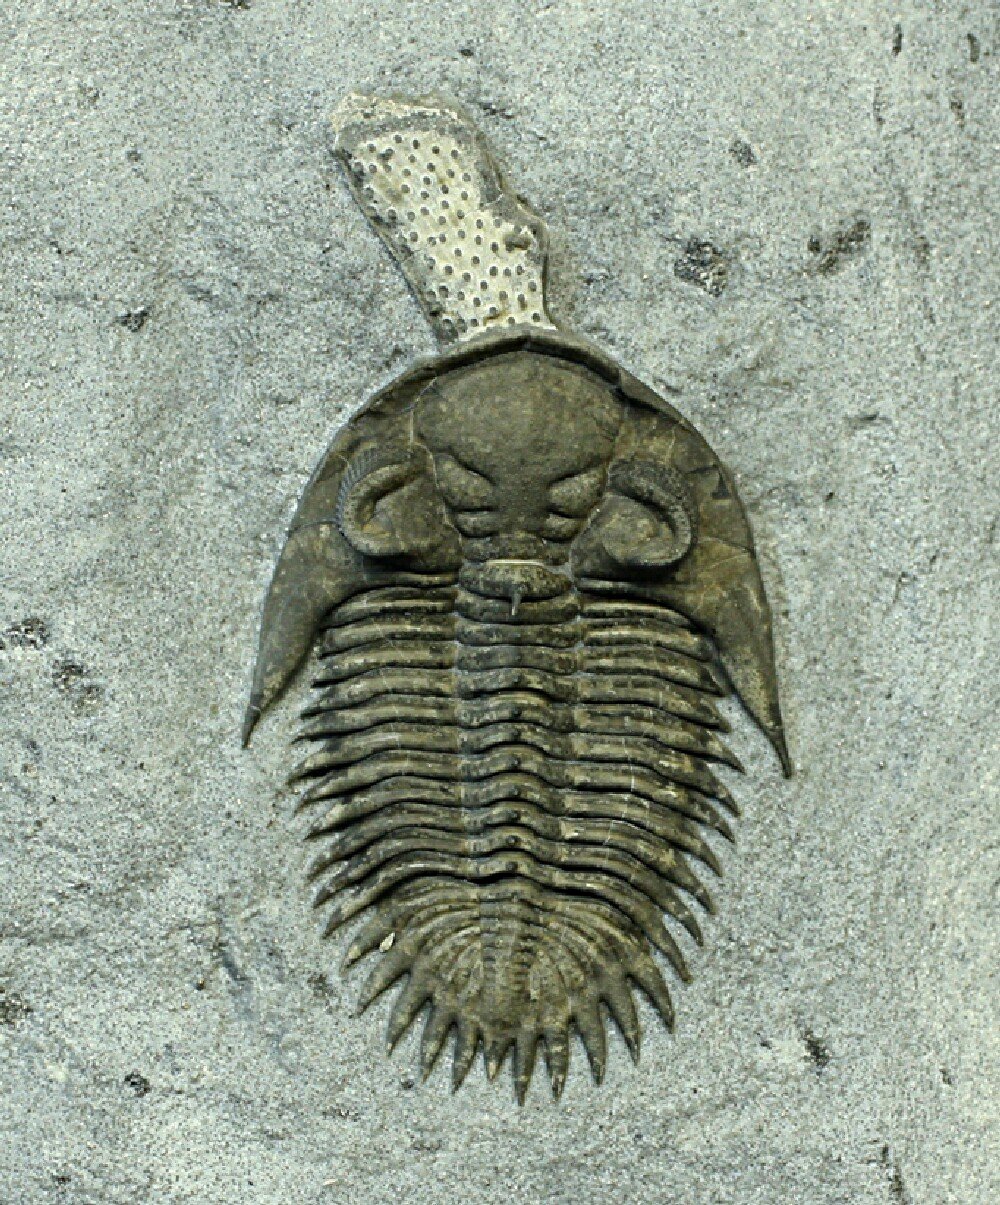 Bellacartwrightia Trilobite